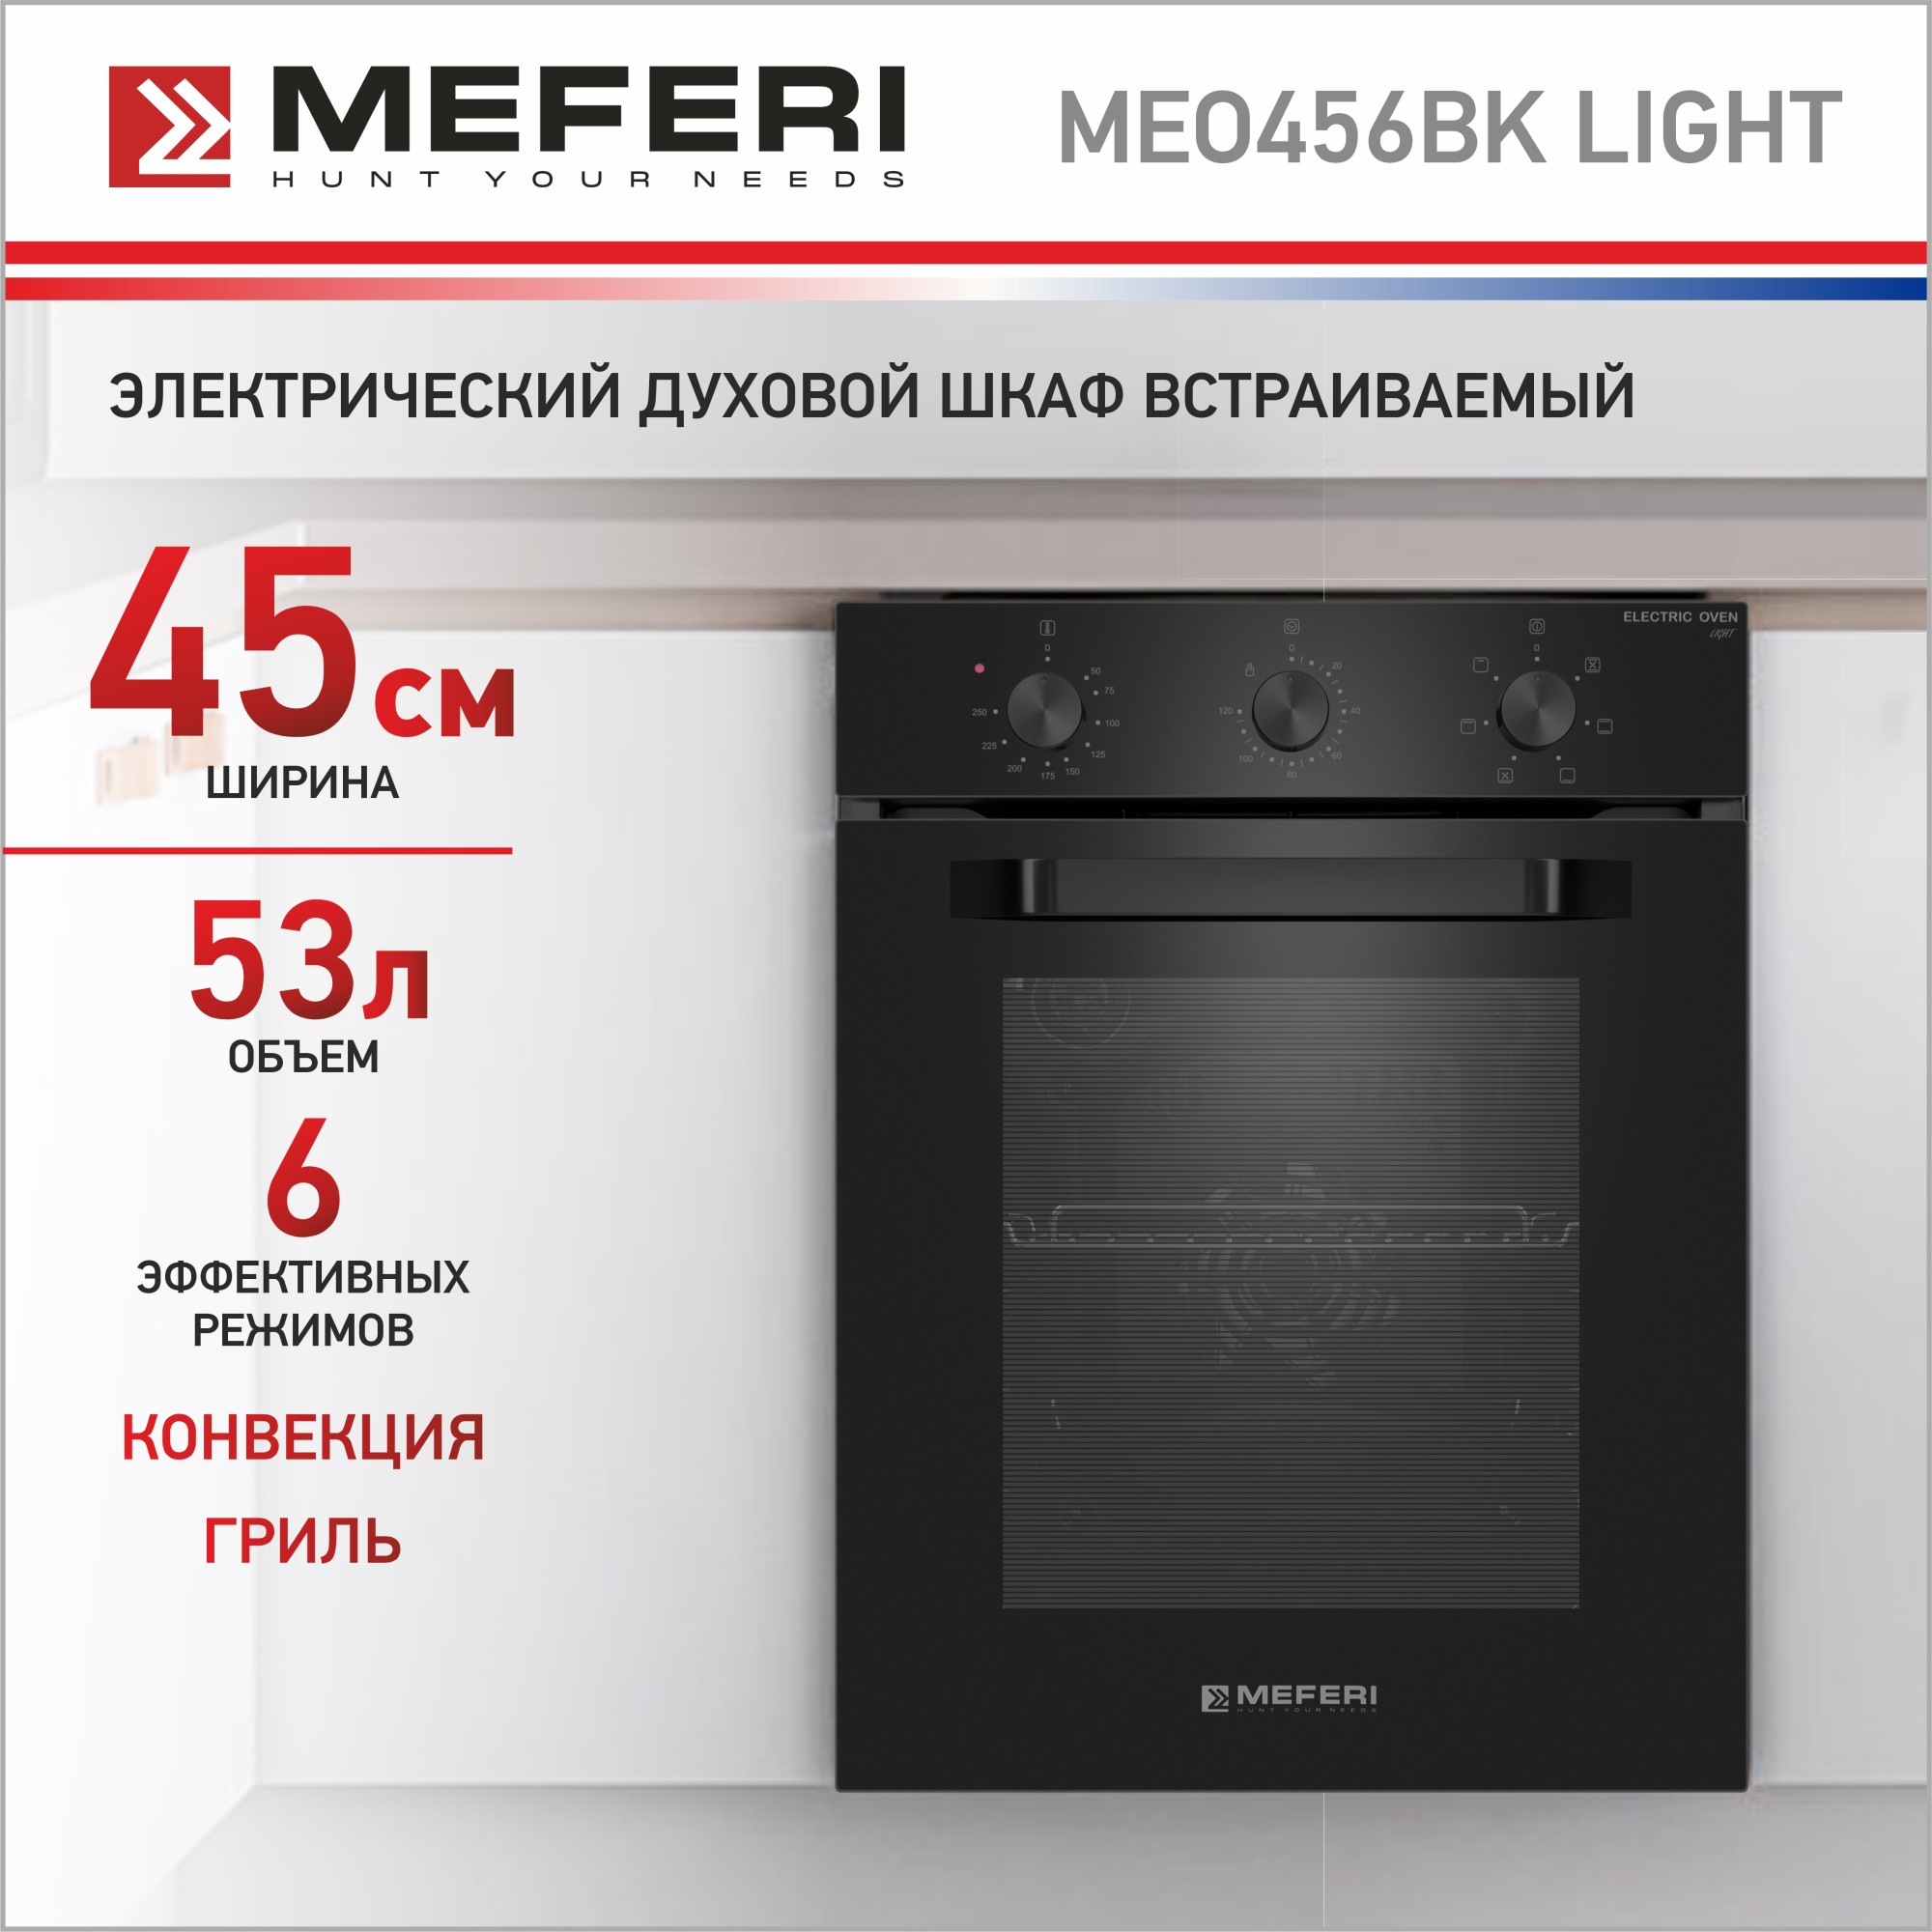 Электрический духовой шкаф MEFERI MEO456BK LIGHT электрический духовой шкаф meferi meo606ix light